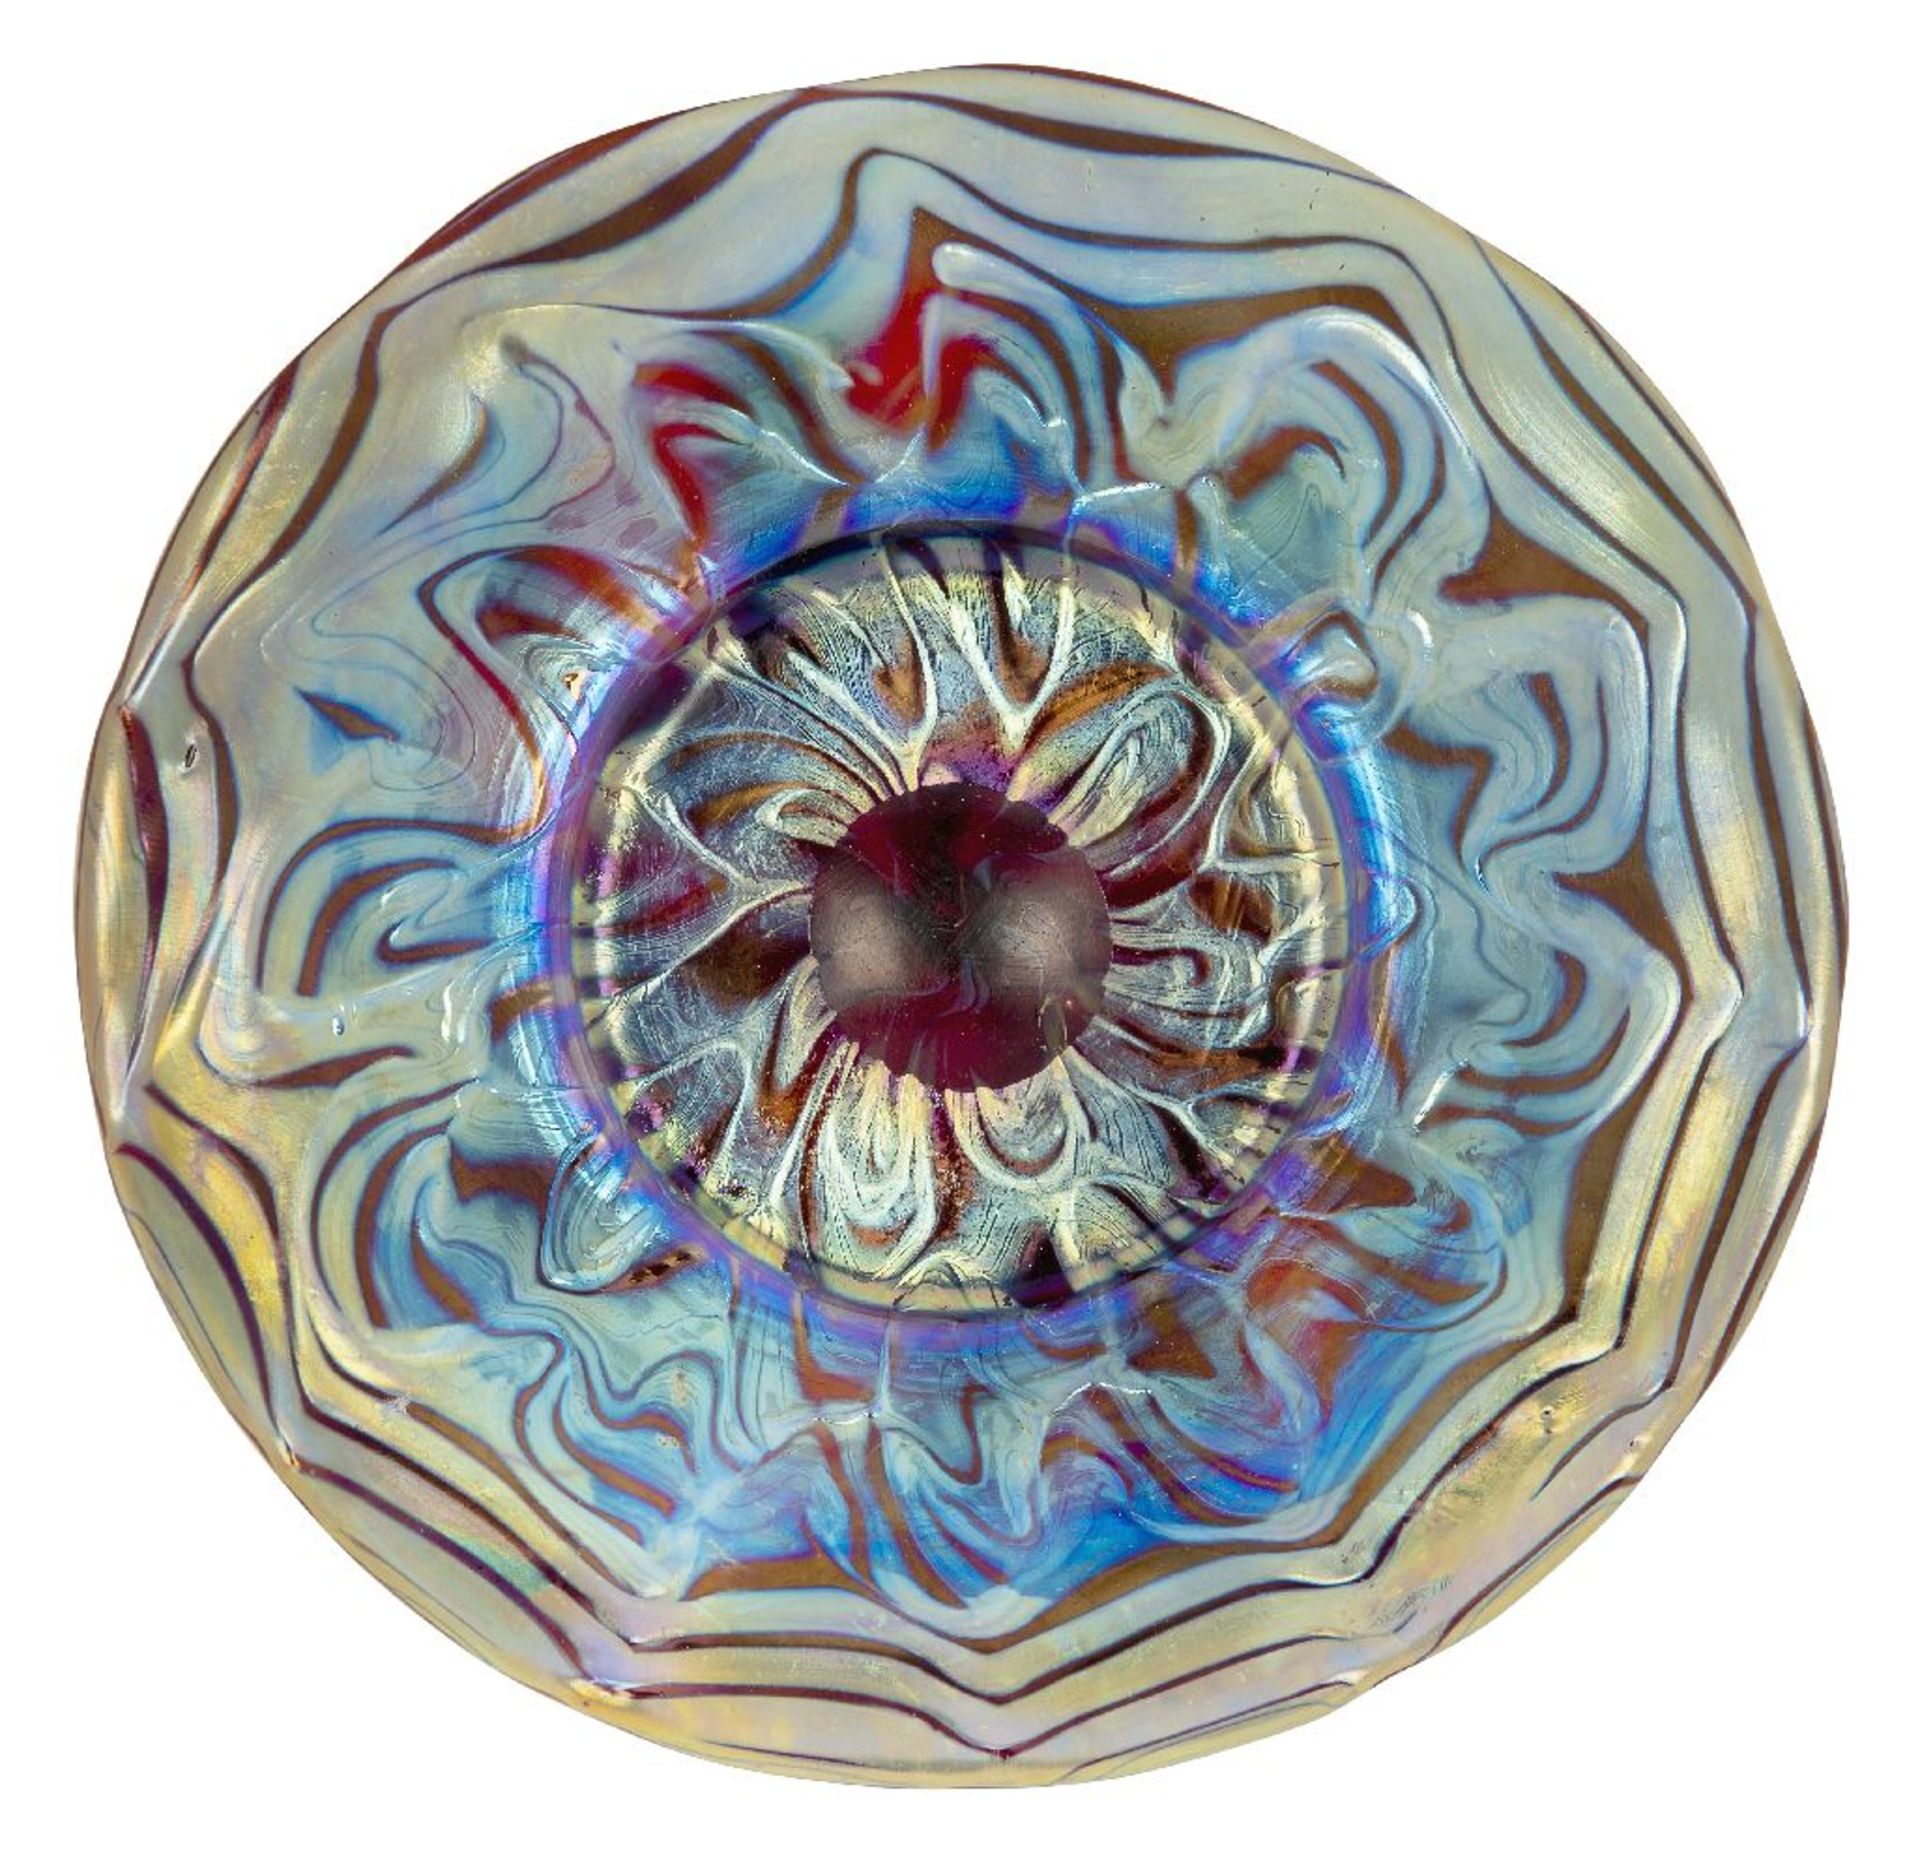 Loetz (Austrian), an iridescent Rubin Phaenomen glass saucer, c.1900, PG 7966, ground out pontil,